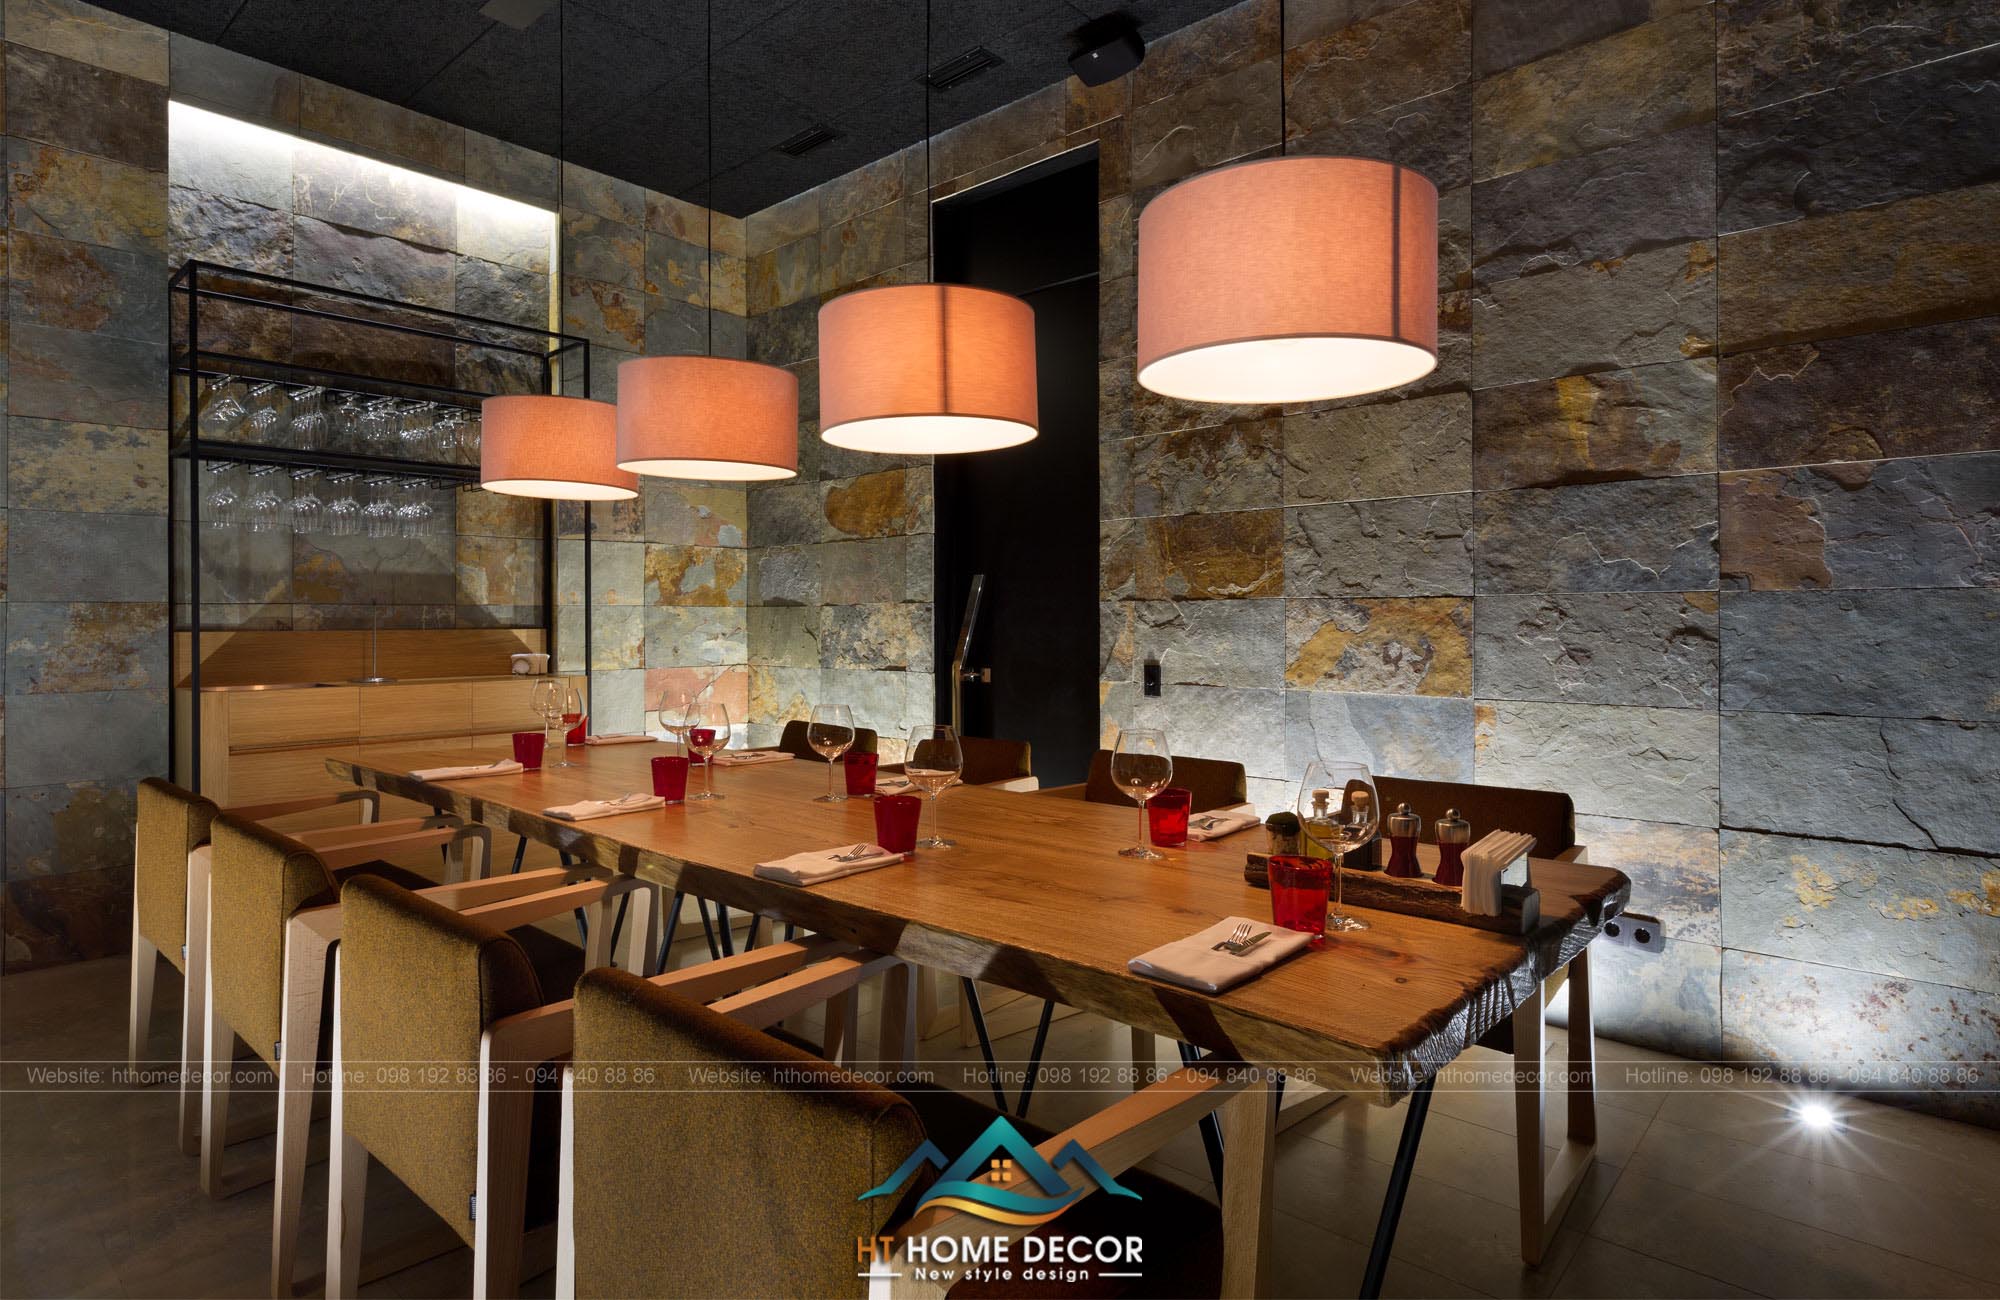 Hệ thống đèn và các bàn ghế được sắp xếp một cách khoa học. Vừa mang đến sự riêng tư cho từng khách hàng khi dùng bữa vừa tạo nên sự gần gũi giữa con người với đồ vật.